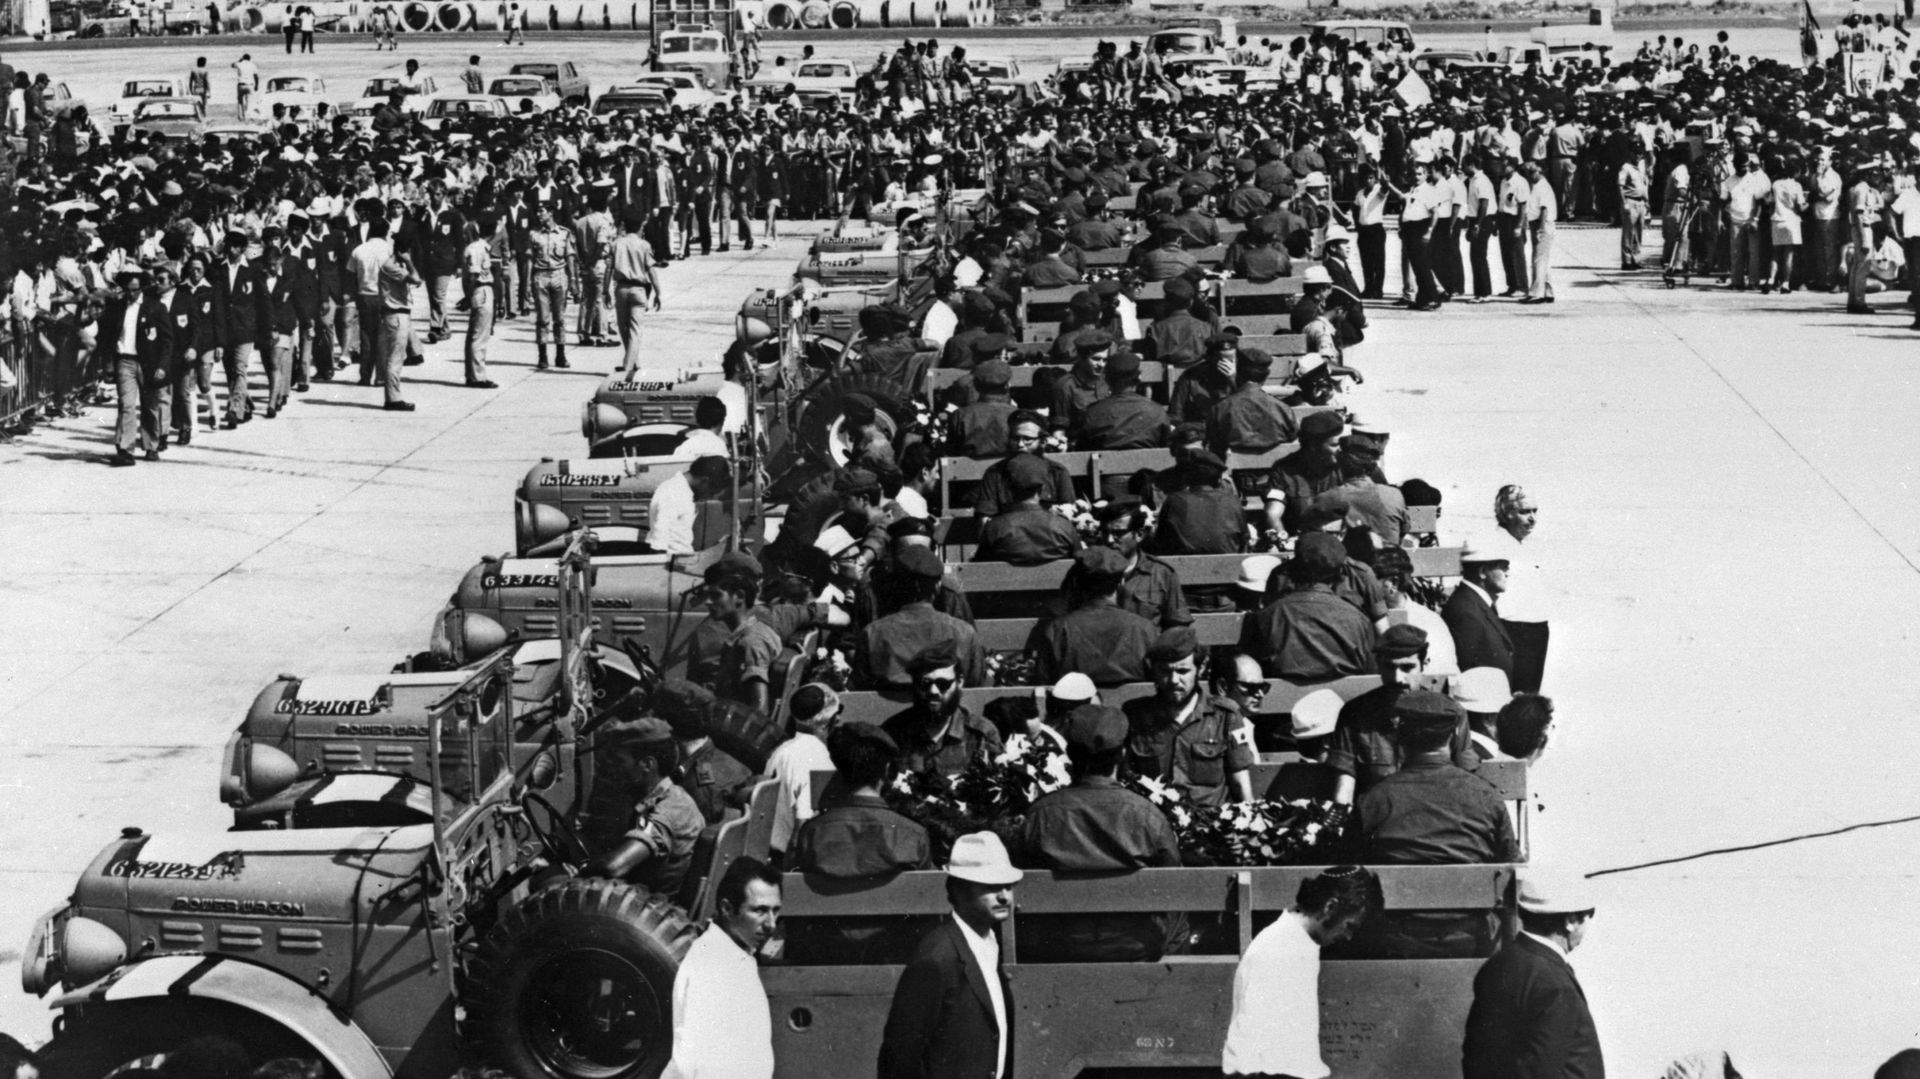 Les cercueils de l’équipe olympique israélienne victimes de la prise d’otages palestinienne sont transportés sur des véhicules militaires à l’aéroport de Lof, Israël, 8 septembre 1972.